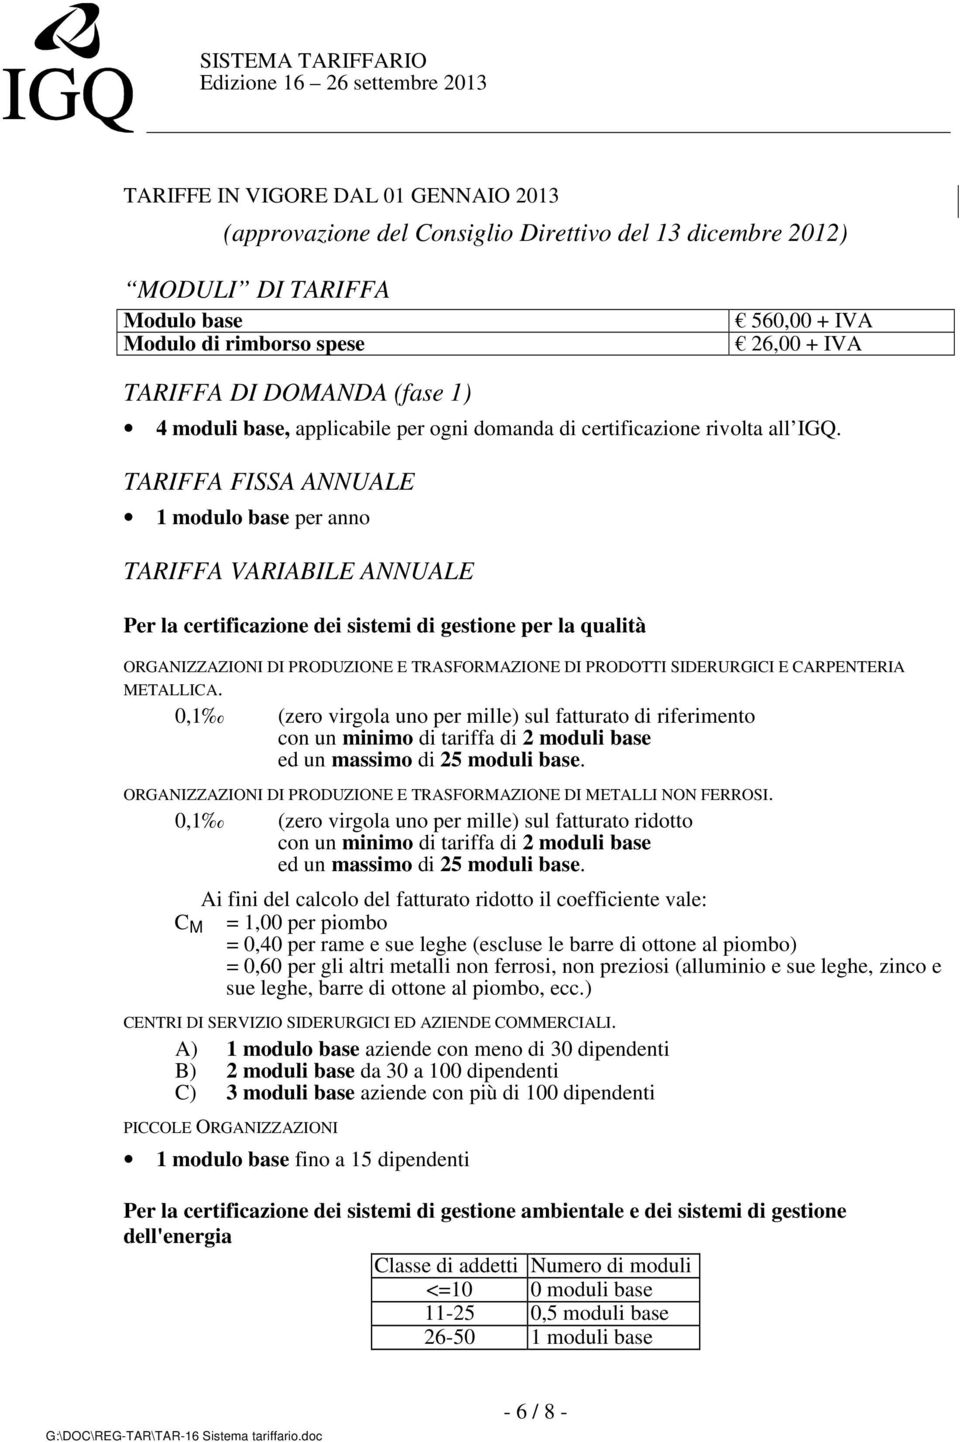 TARIFFA FISSA ANNUALE 1 modulo base per anno TARIFFA VARIABILE ANNUALE Per la certificazione dei sistemi di gestione per la qualità ORGANIZZAZIONI DI PRODUZIONE E TRASFORMAZIONE DI PRODOTTI